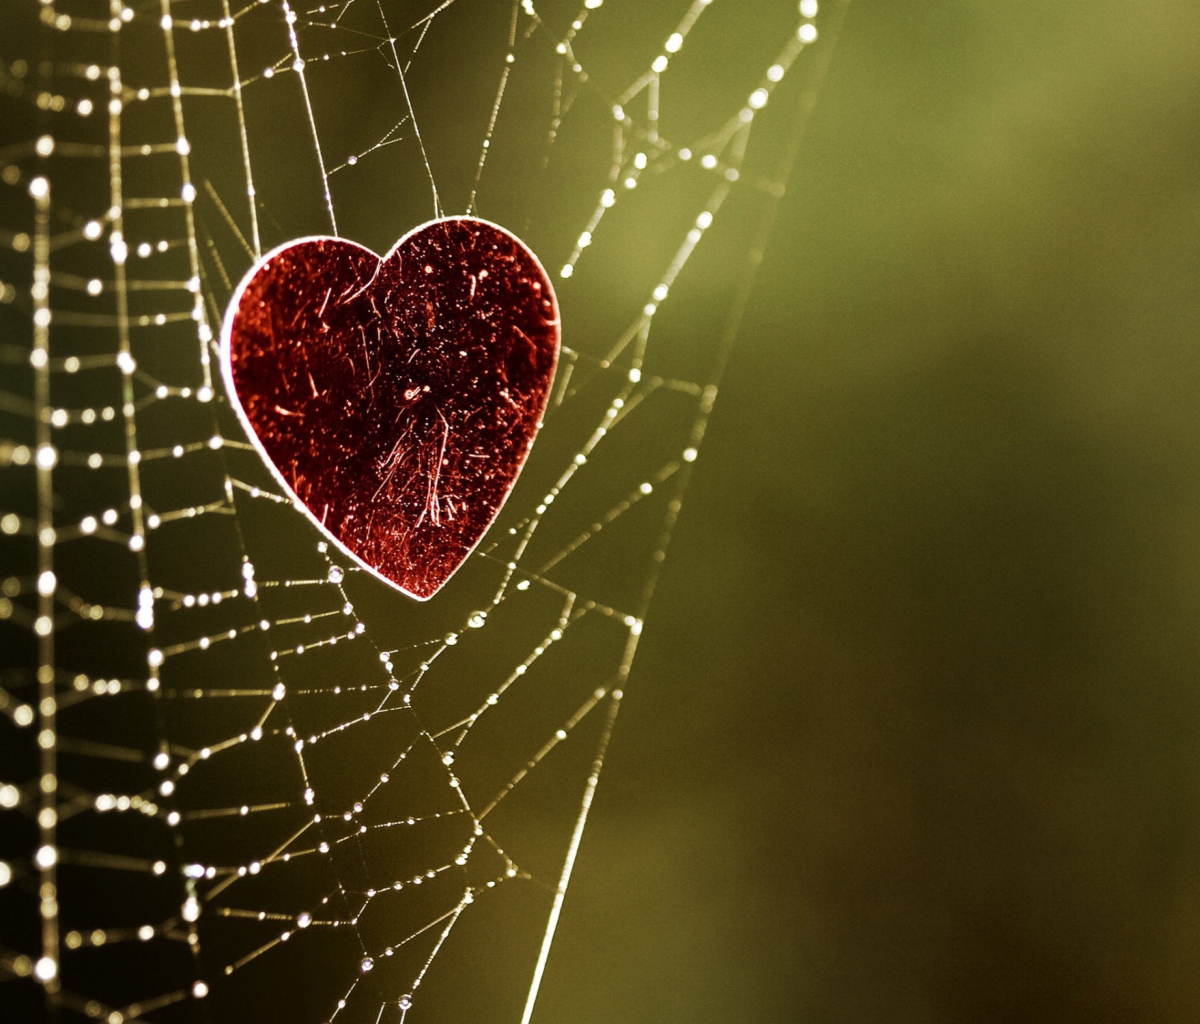 Das Heart In Spider Web Wallpaper 1200x1024